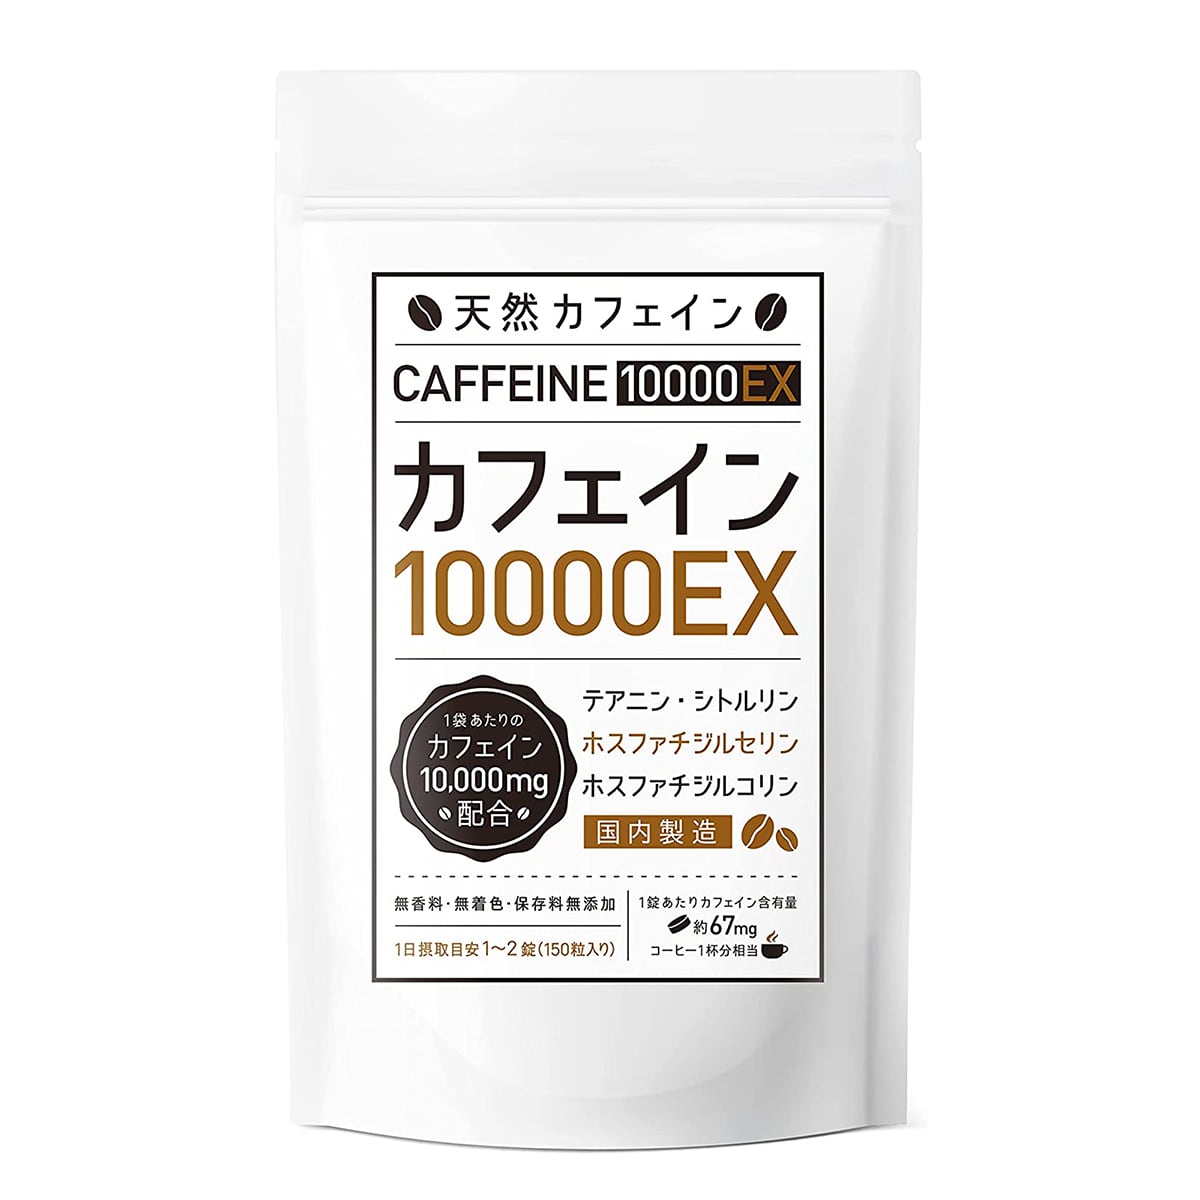 カフェインサプリメント『カフェイン10000EX』